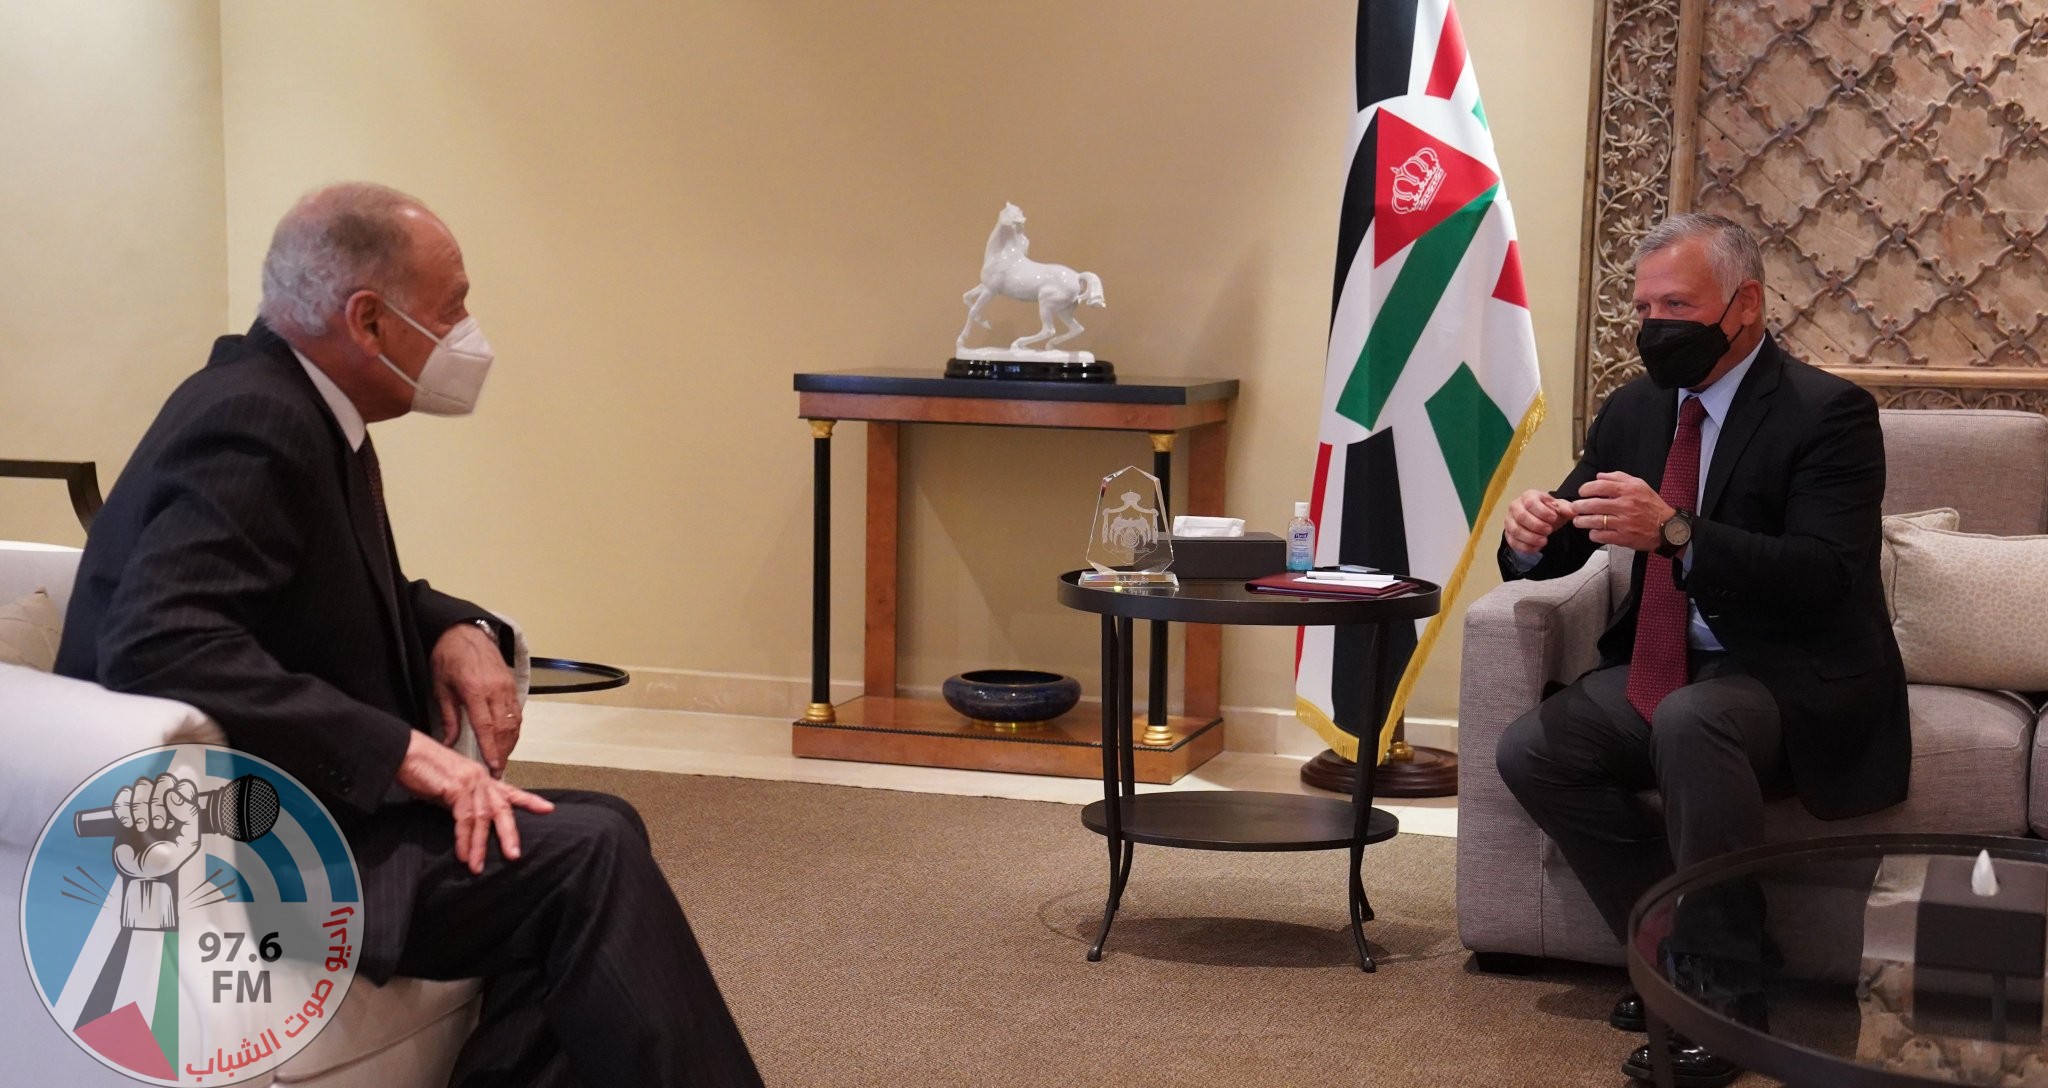 الملك الأردني يجدد التأكيد على أهمية تحريك عملية السلام على أساس حل الدولتين